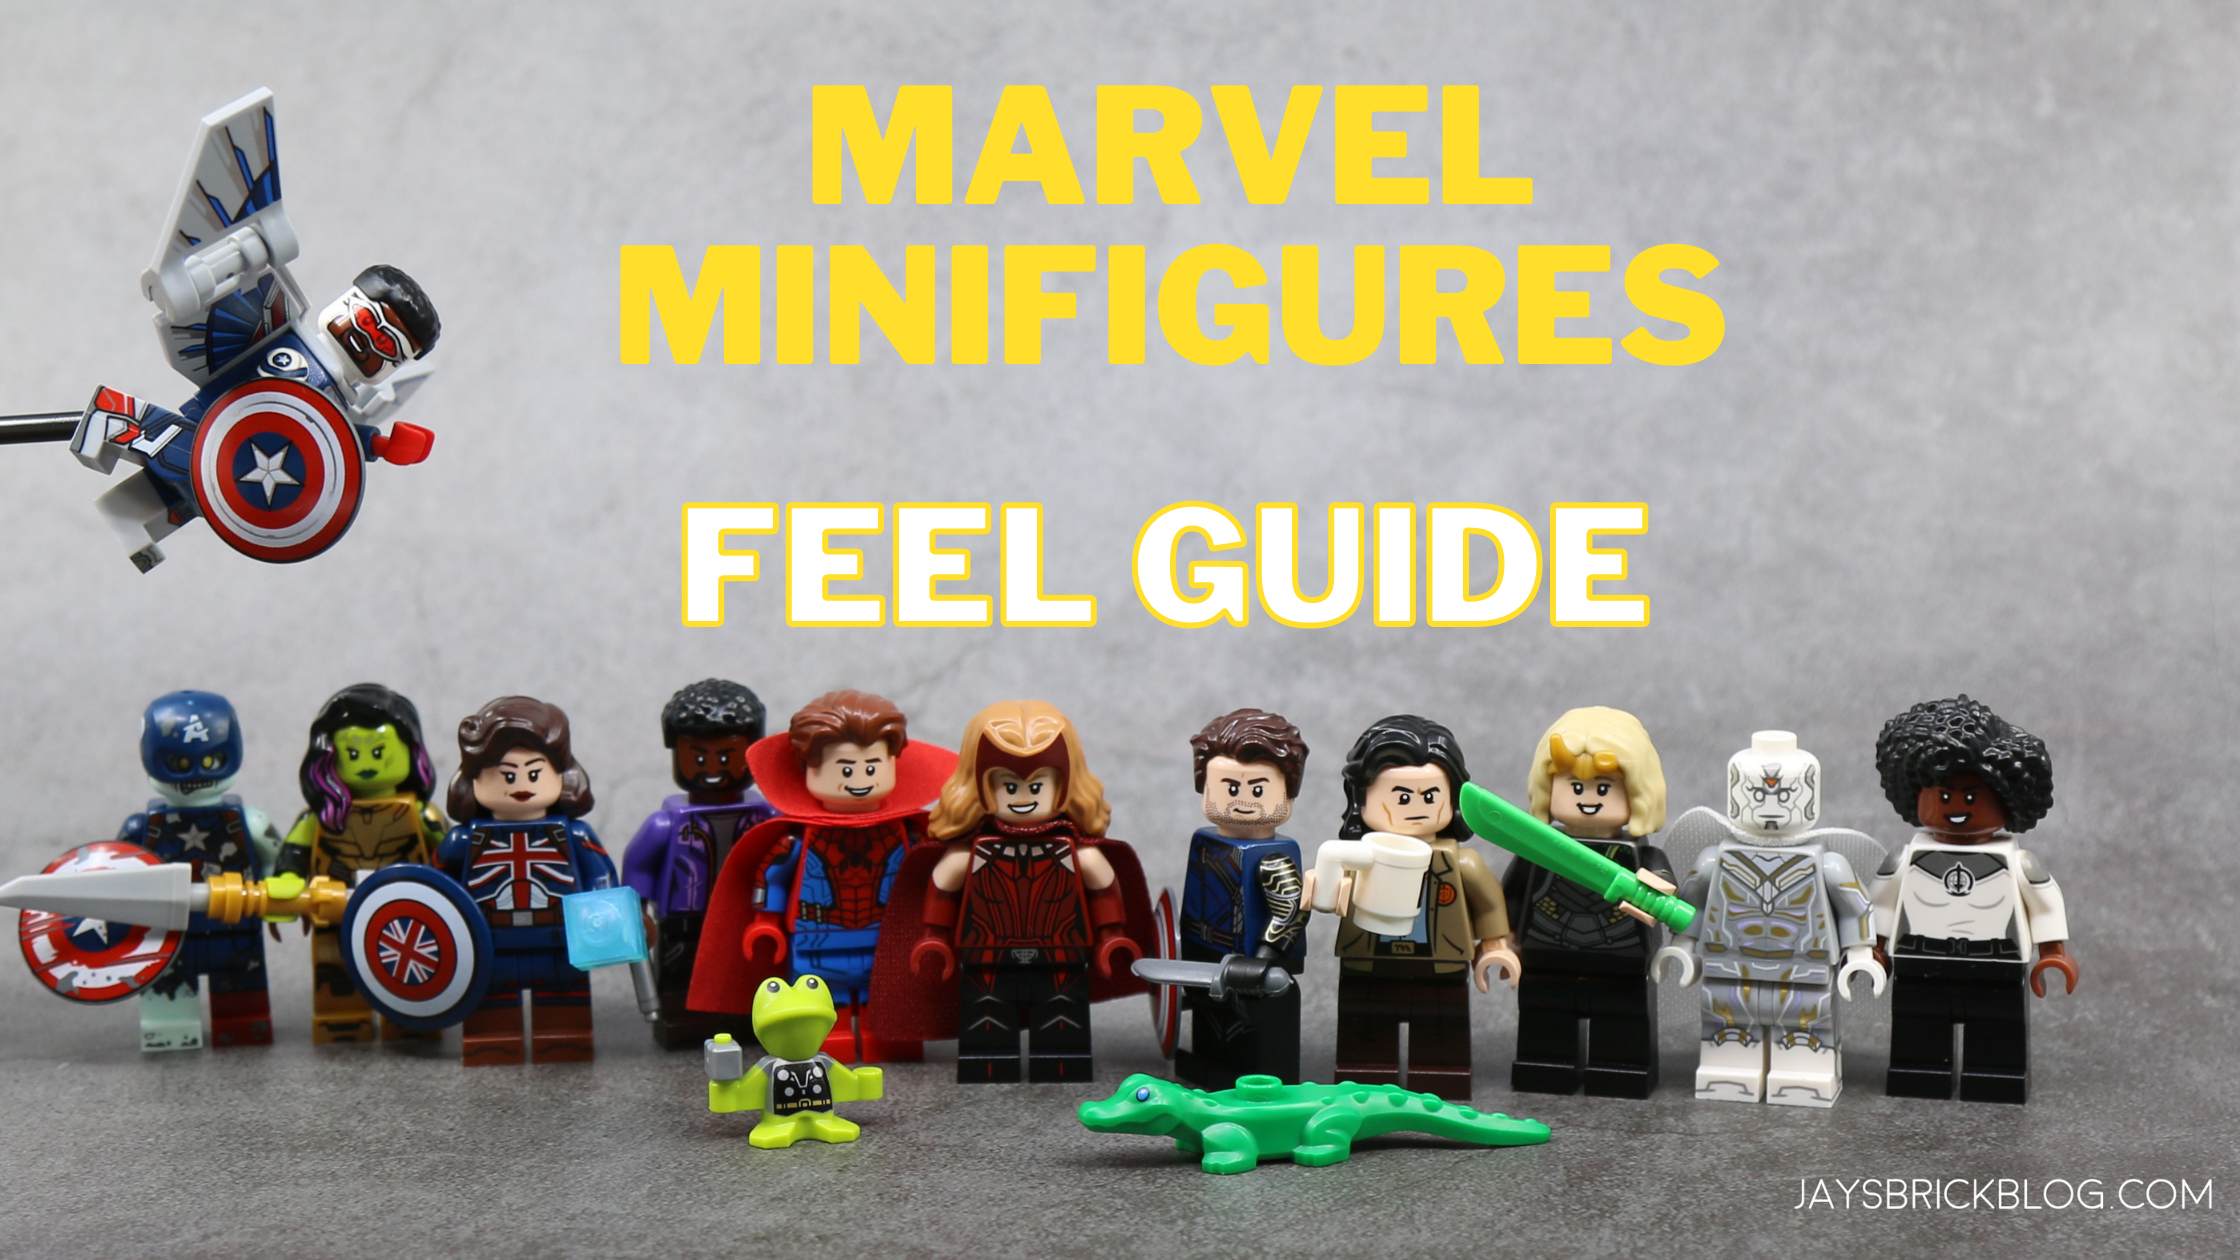 Genuine LEGO DC Marvel Super Heroes & Star Wars Minifigures Split From Sets 